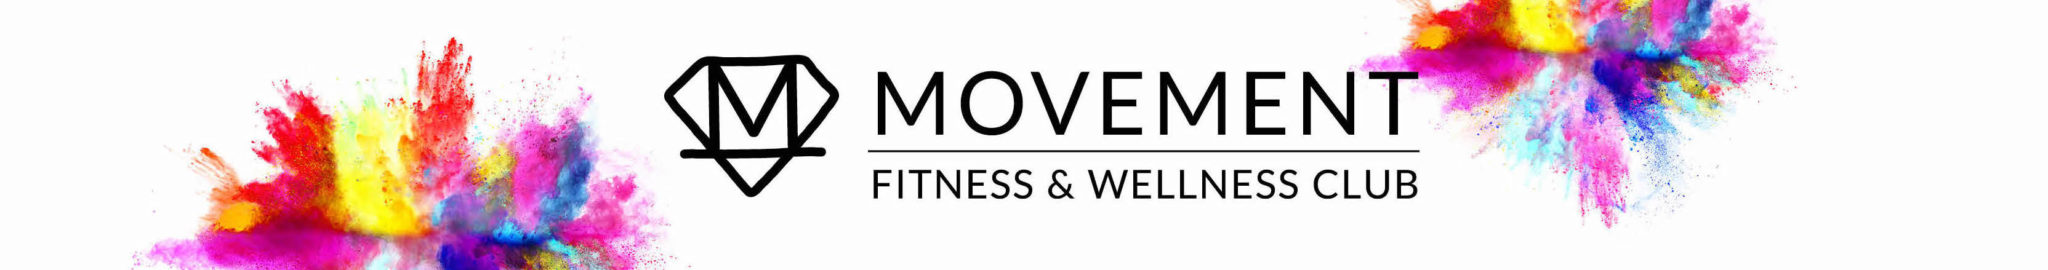 MOVEMENT Fitness & Wellness Club